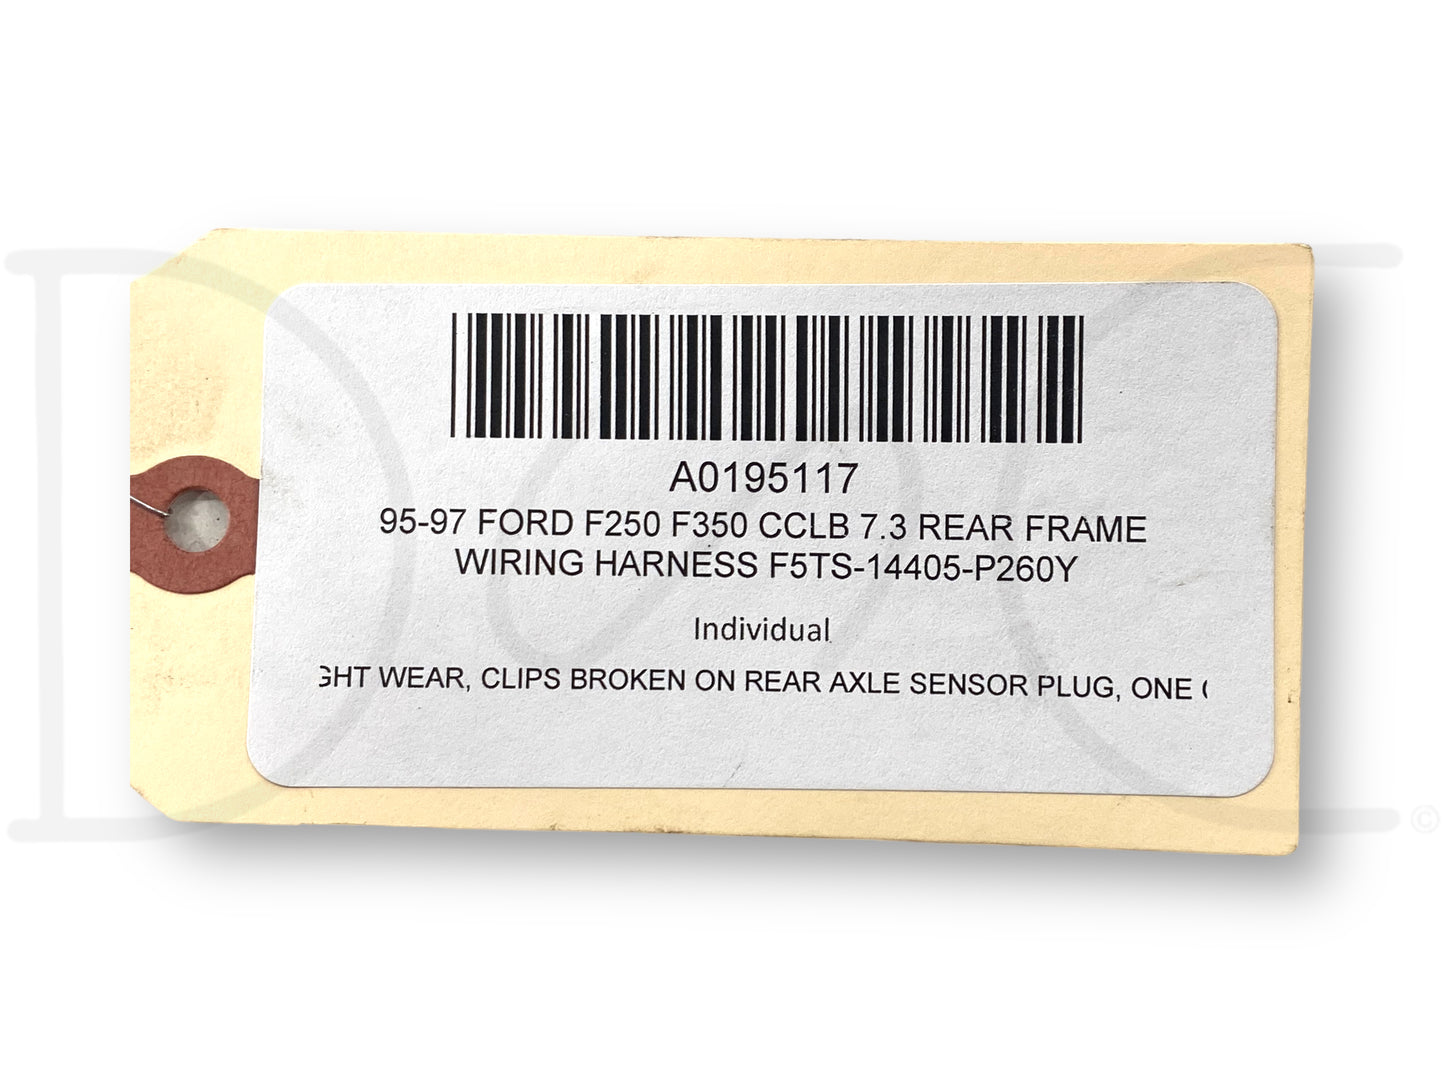 95-97 Ford F250 F350 CCLB 7.3 Rear Frame Wiring Harness F5Ts-14405-P260Y